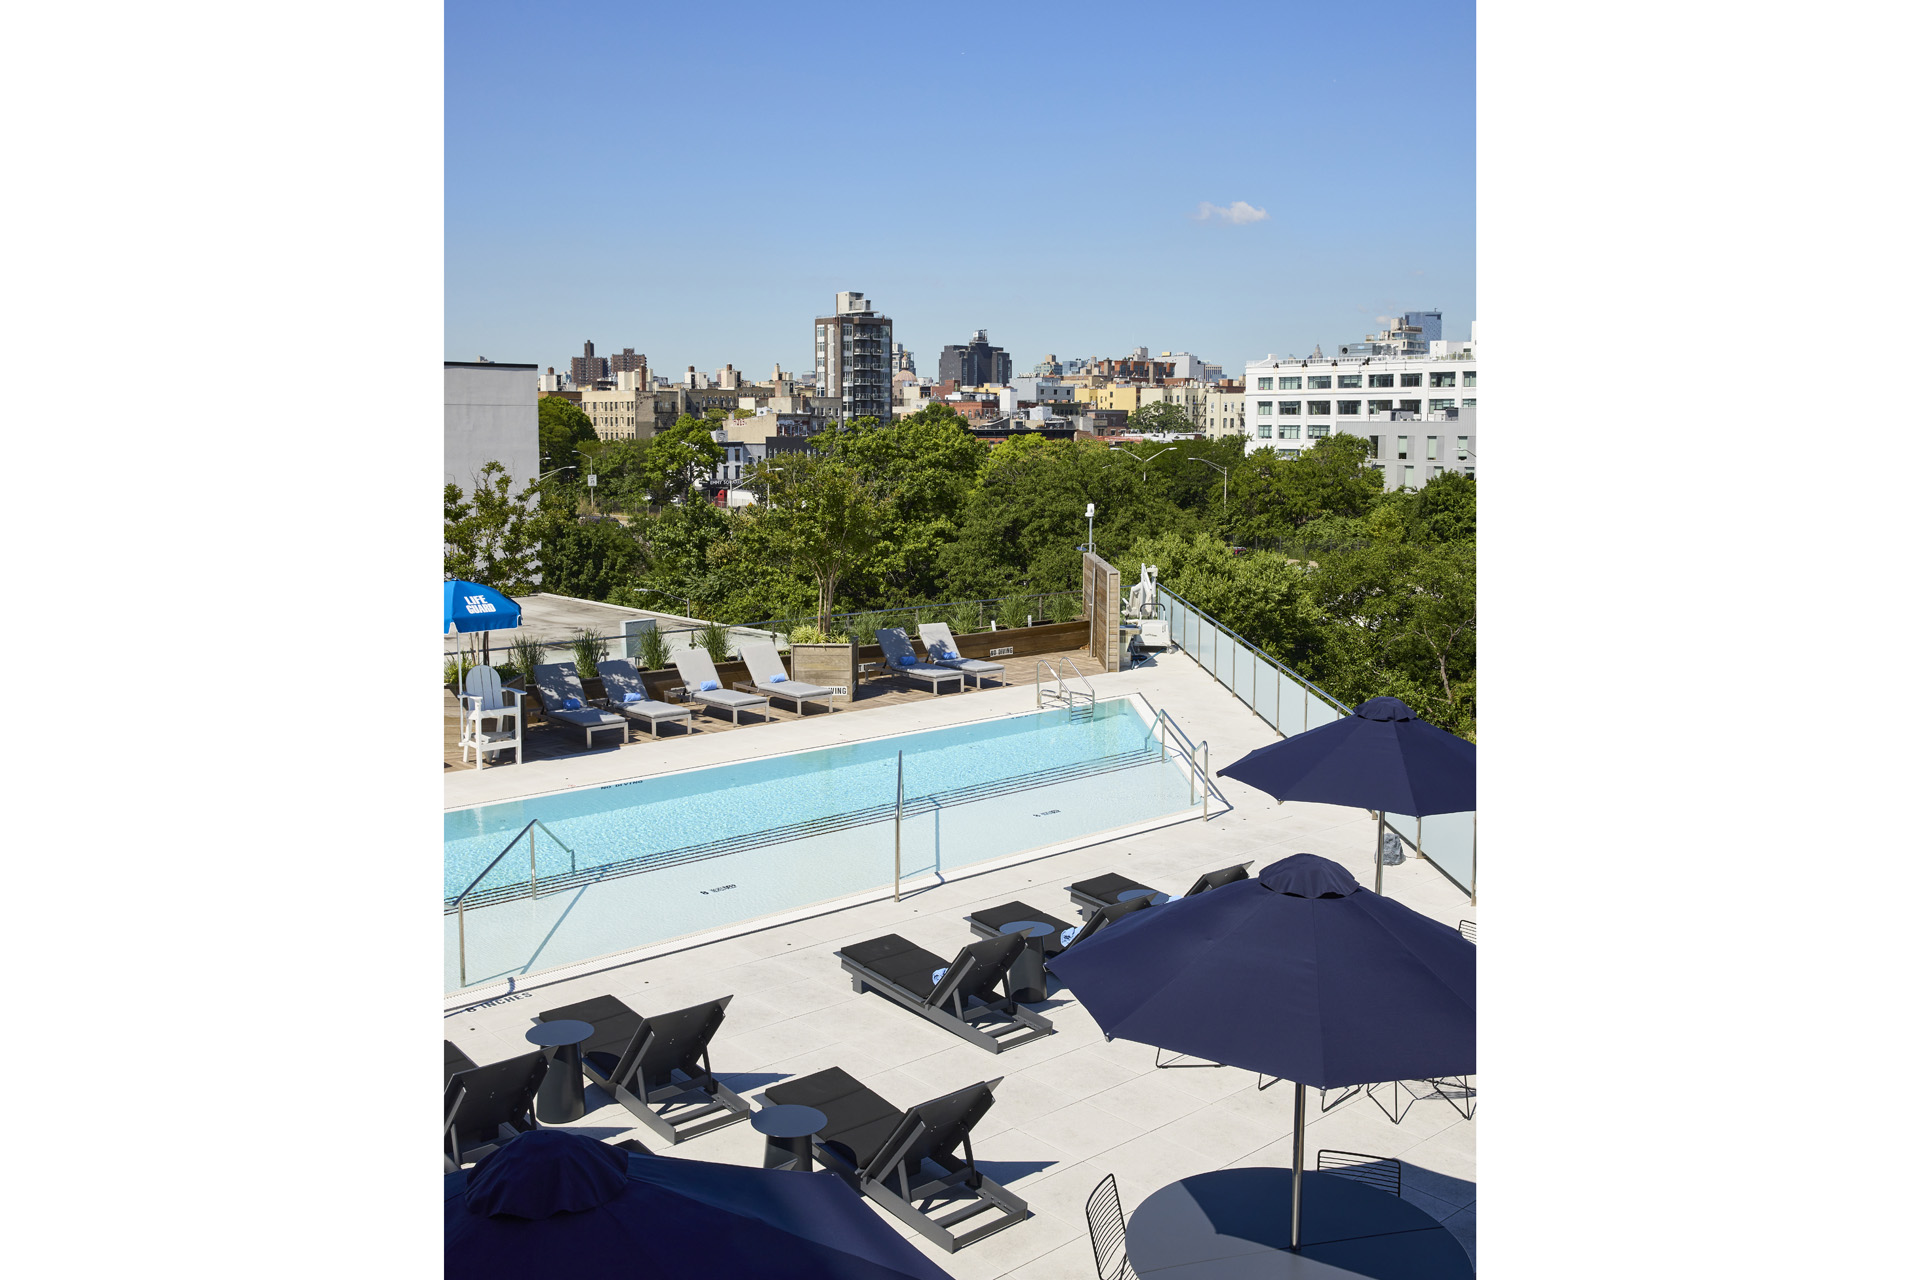 rooftop pool at Hotel Indigo Williamsburg in Brooklyn